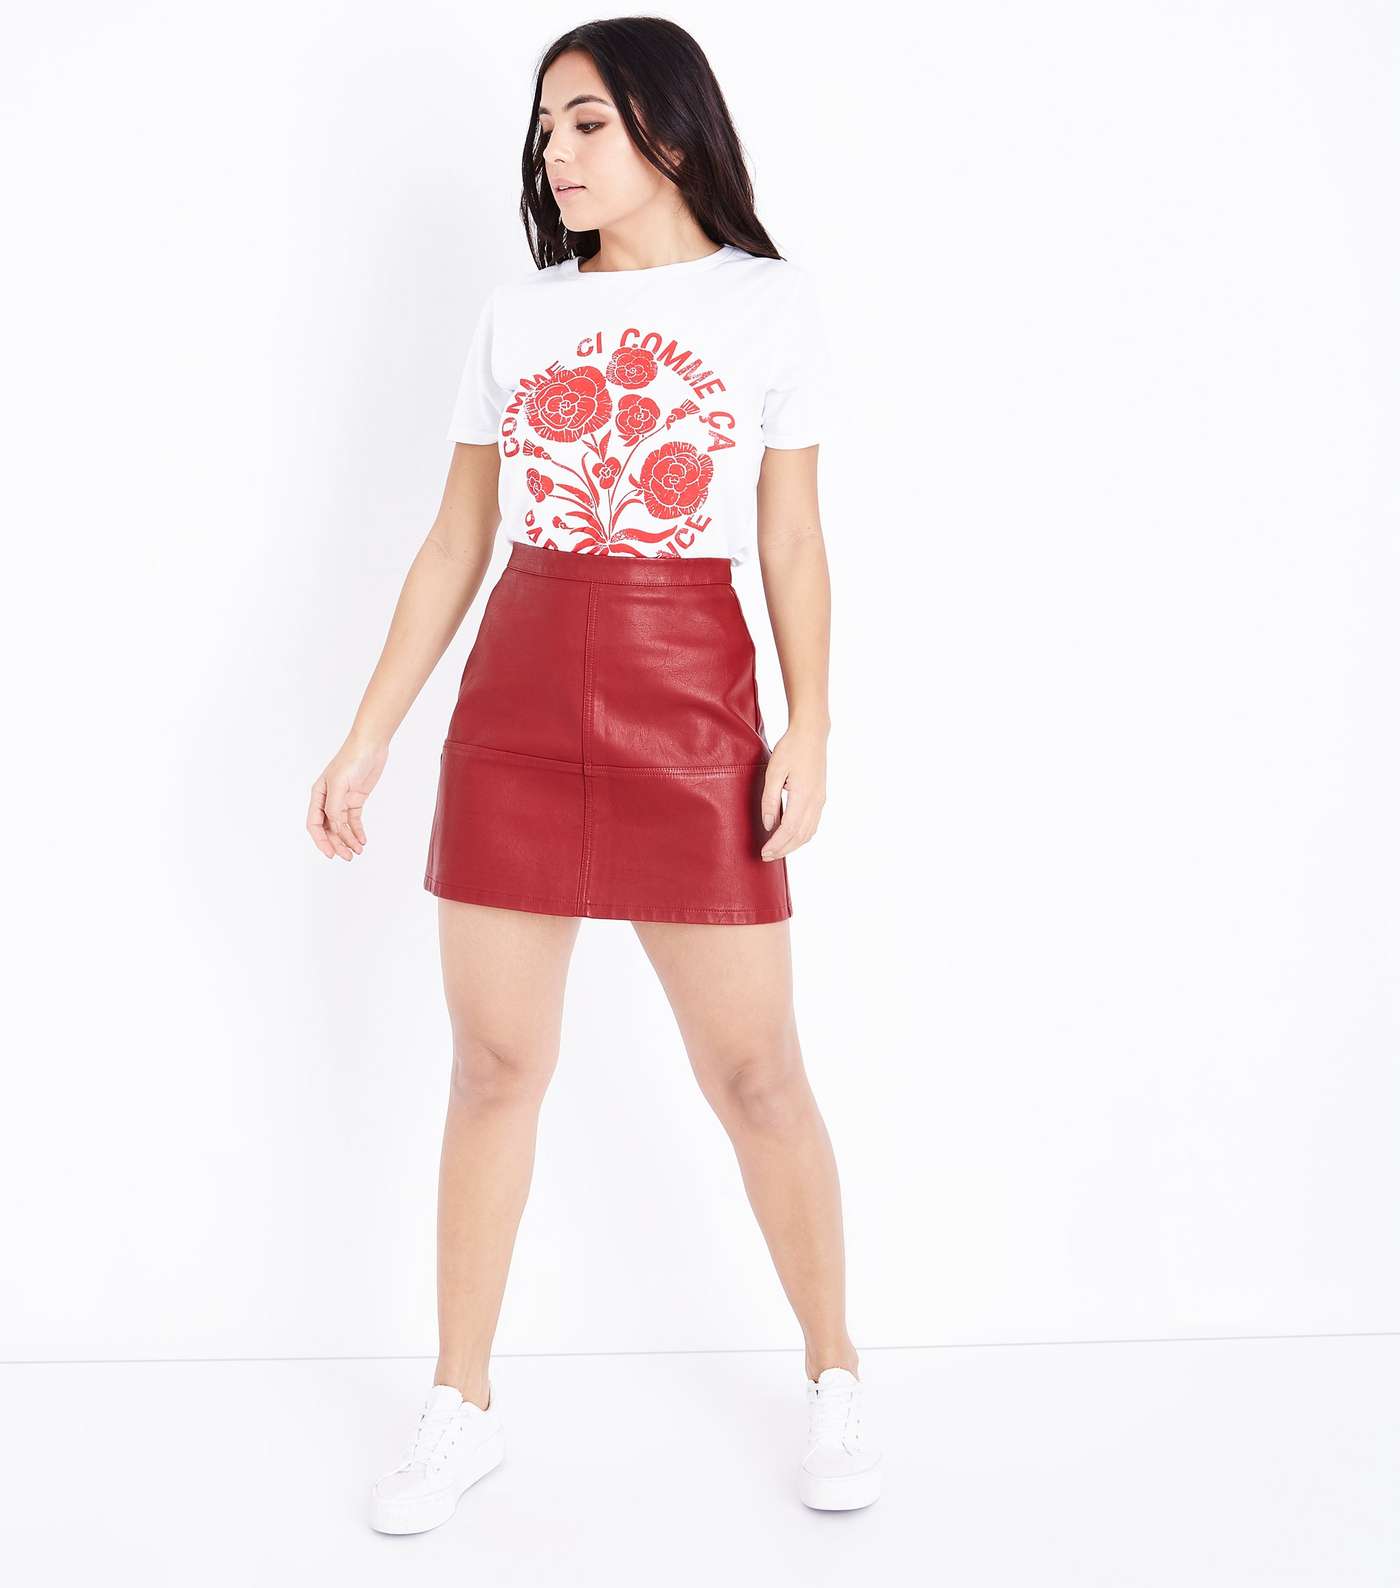 Petite Dark Red Leather-Look Mini Skirt Image 2